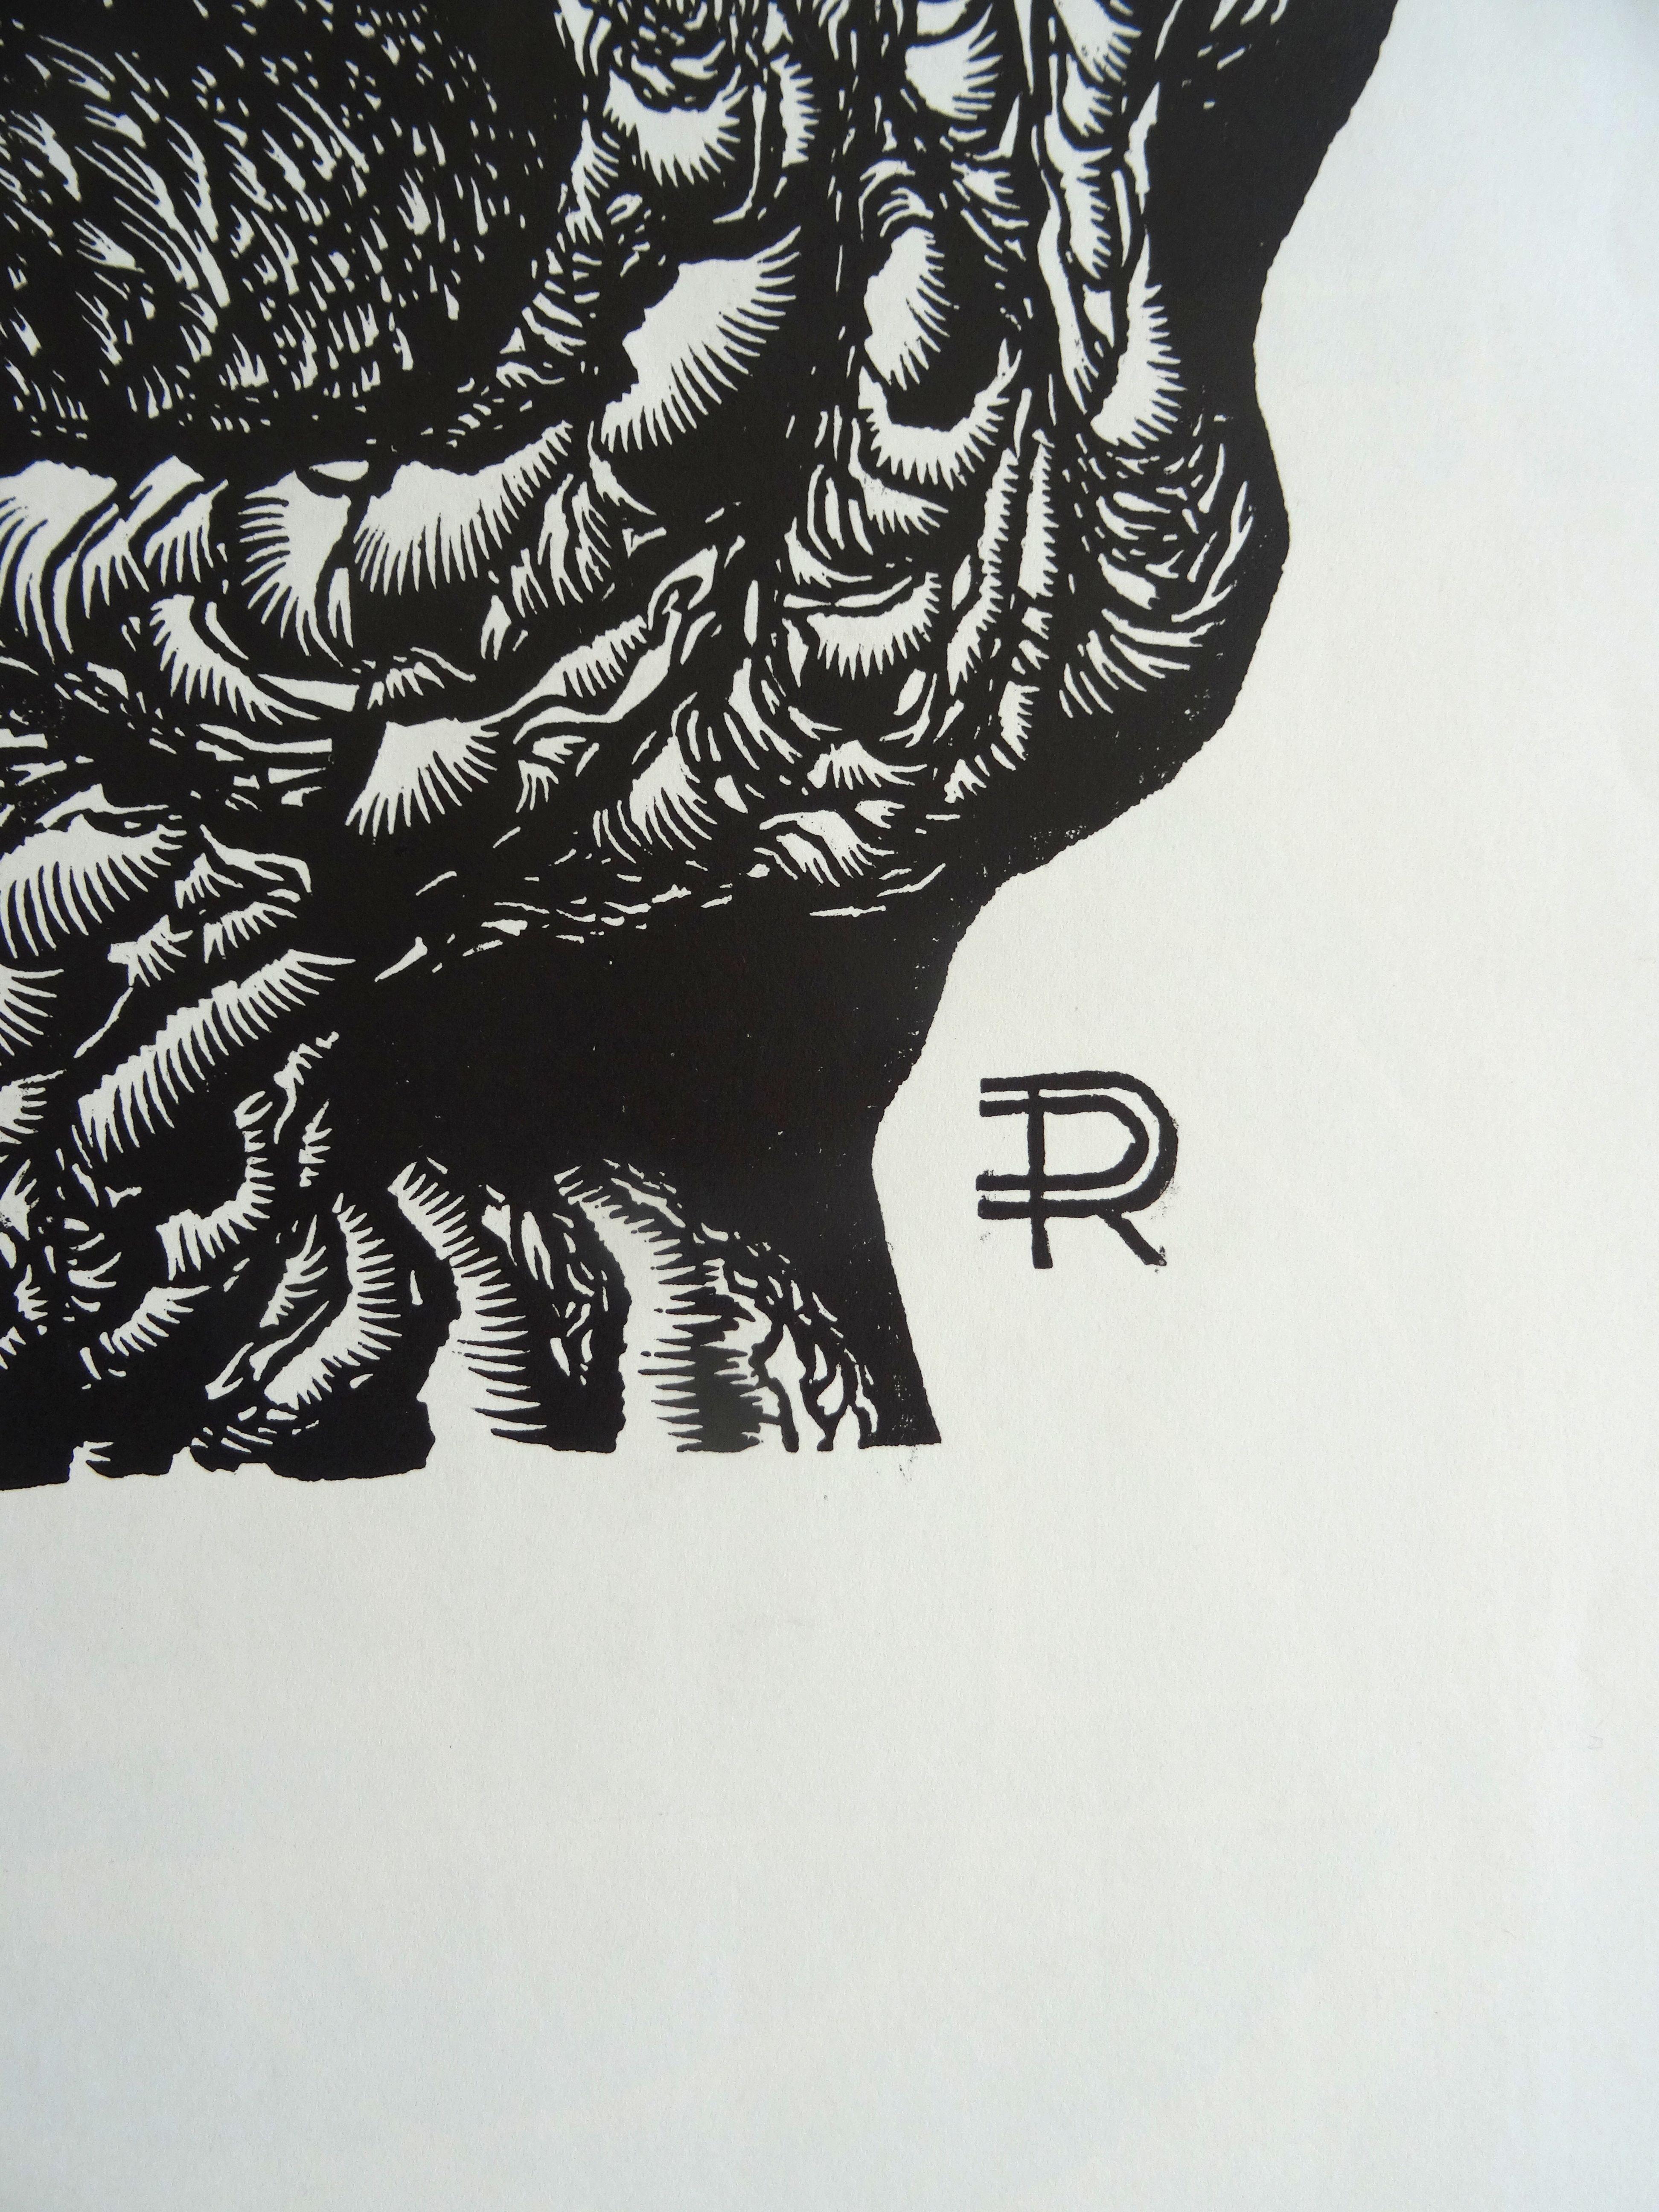 Großvaterbaum. 1982, Papier, Linolschnitt, Druckgröße 50x55 cm; insgesamt 65x65 cm (Geometrische Abstraktion), Print, von Dainis Rozkalns